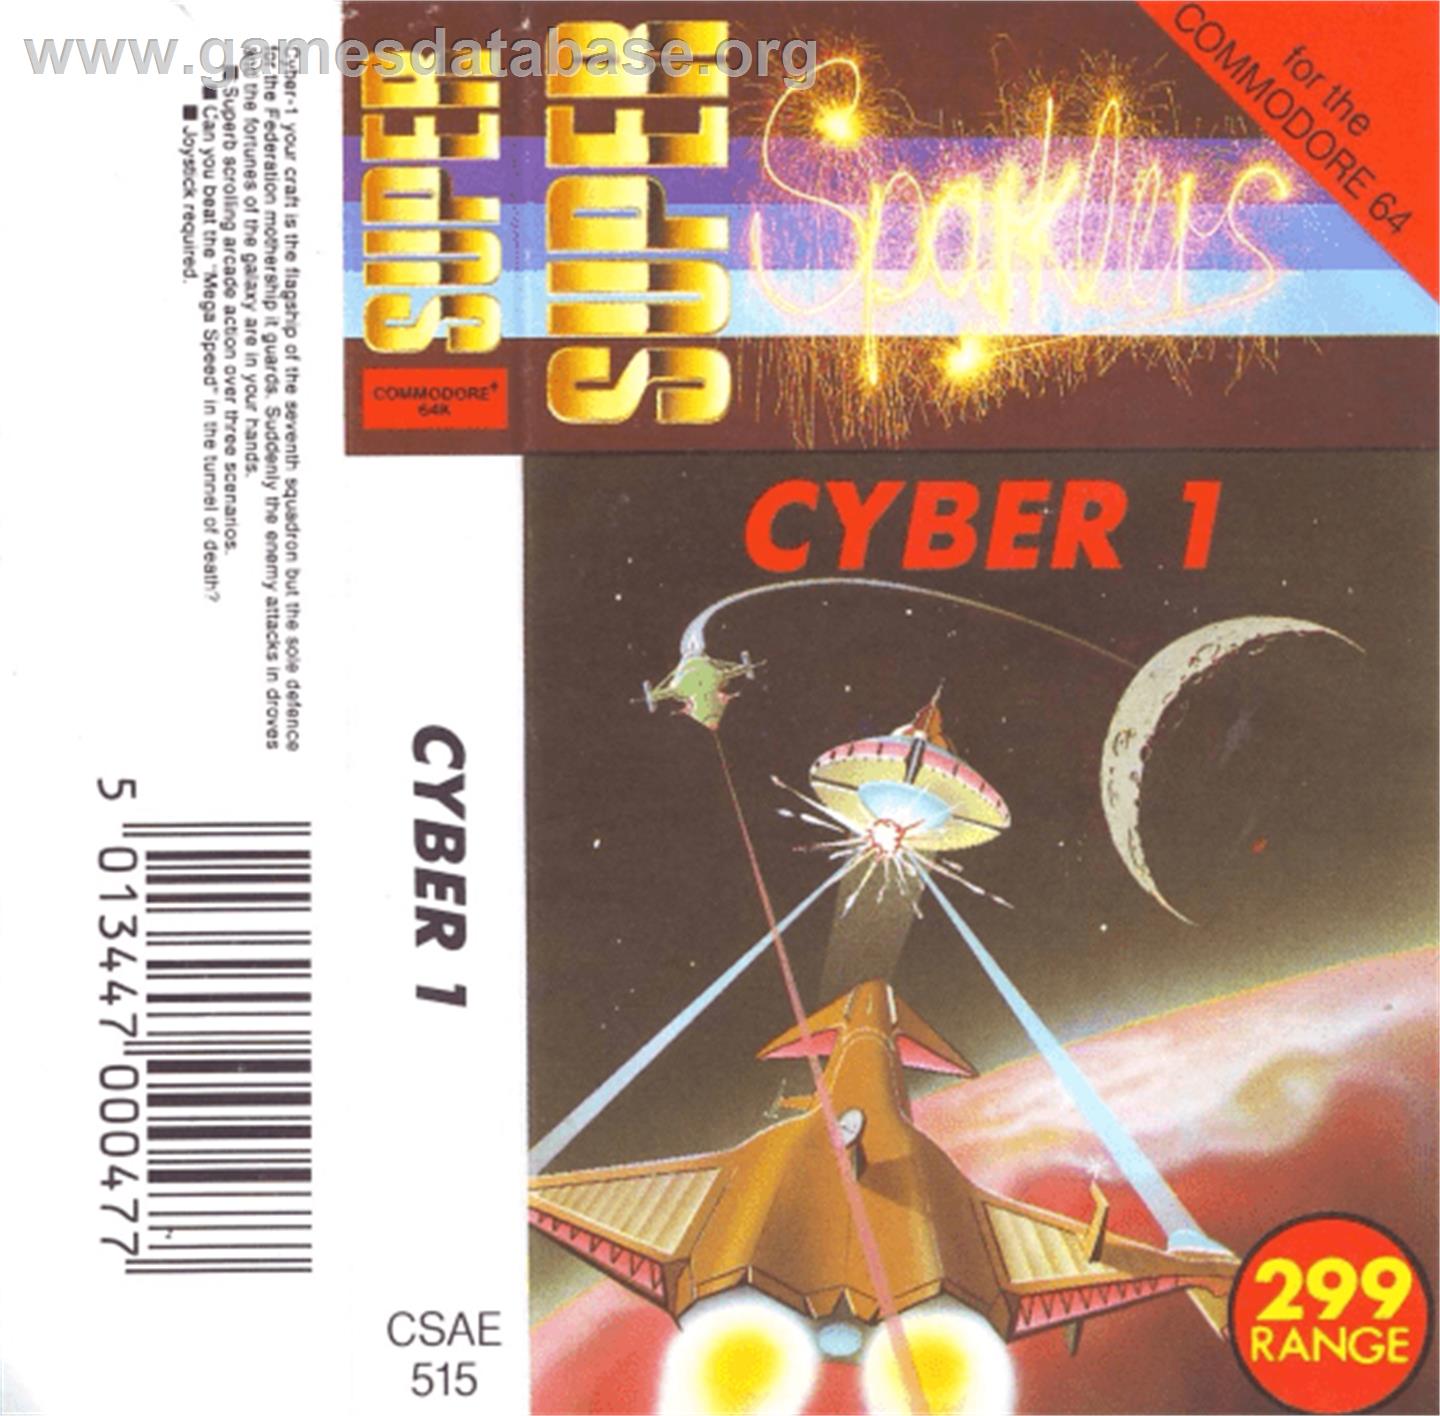 Cyborg - Commodore 64 - Artwork - Box